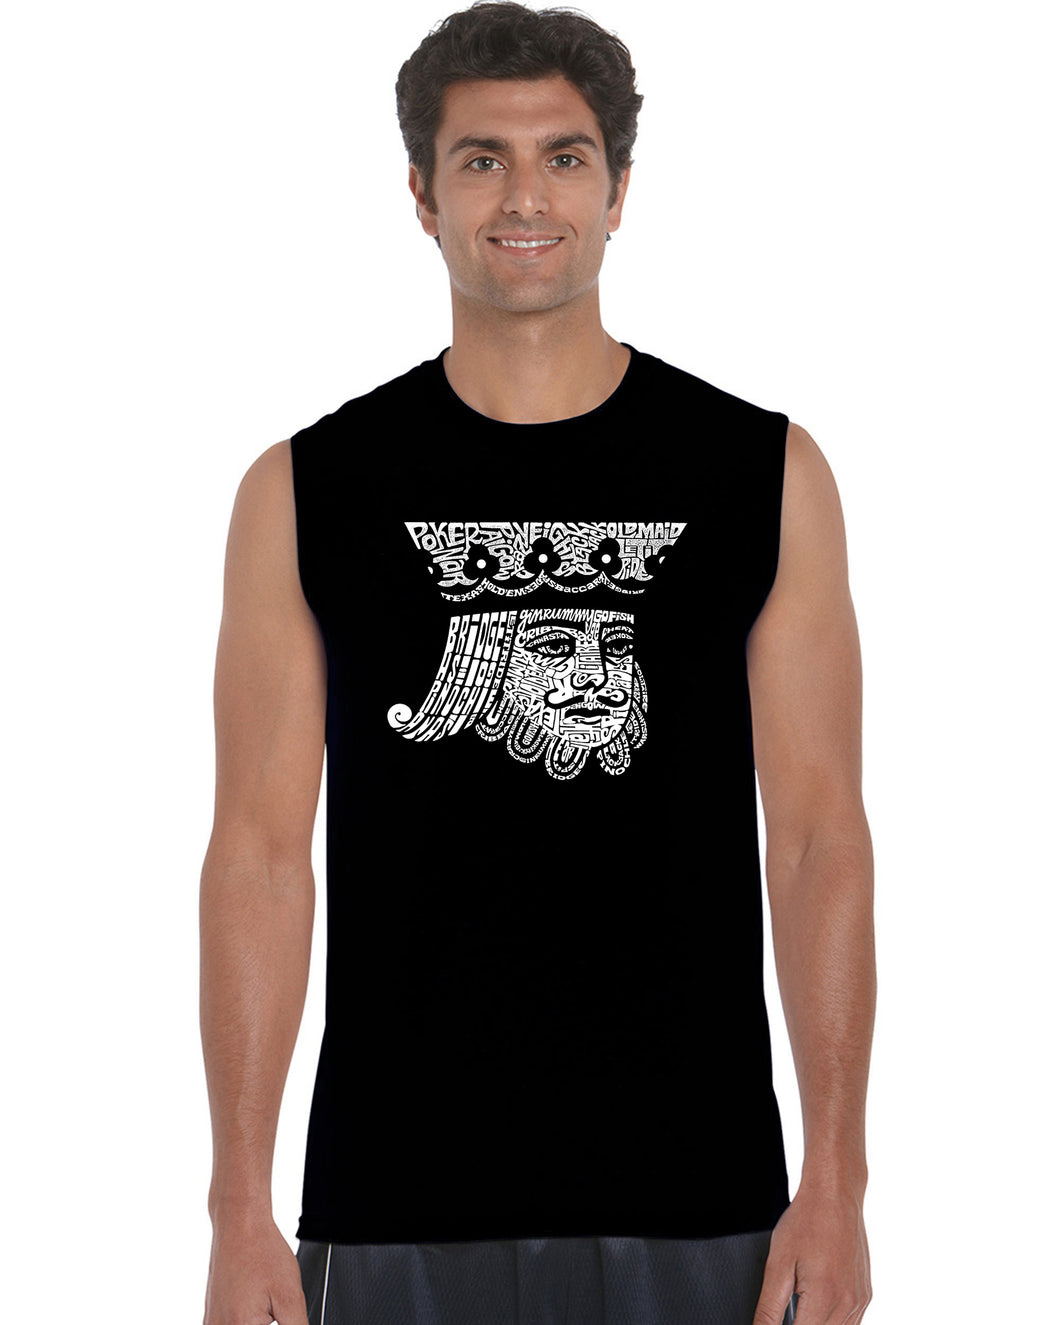 King of Spades - Men's Word Art Sleeveless T-Shirt